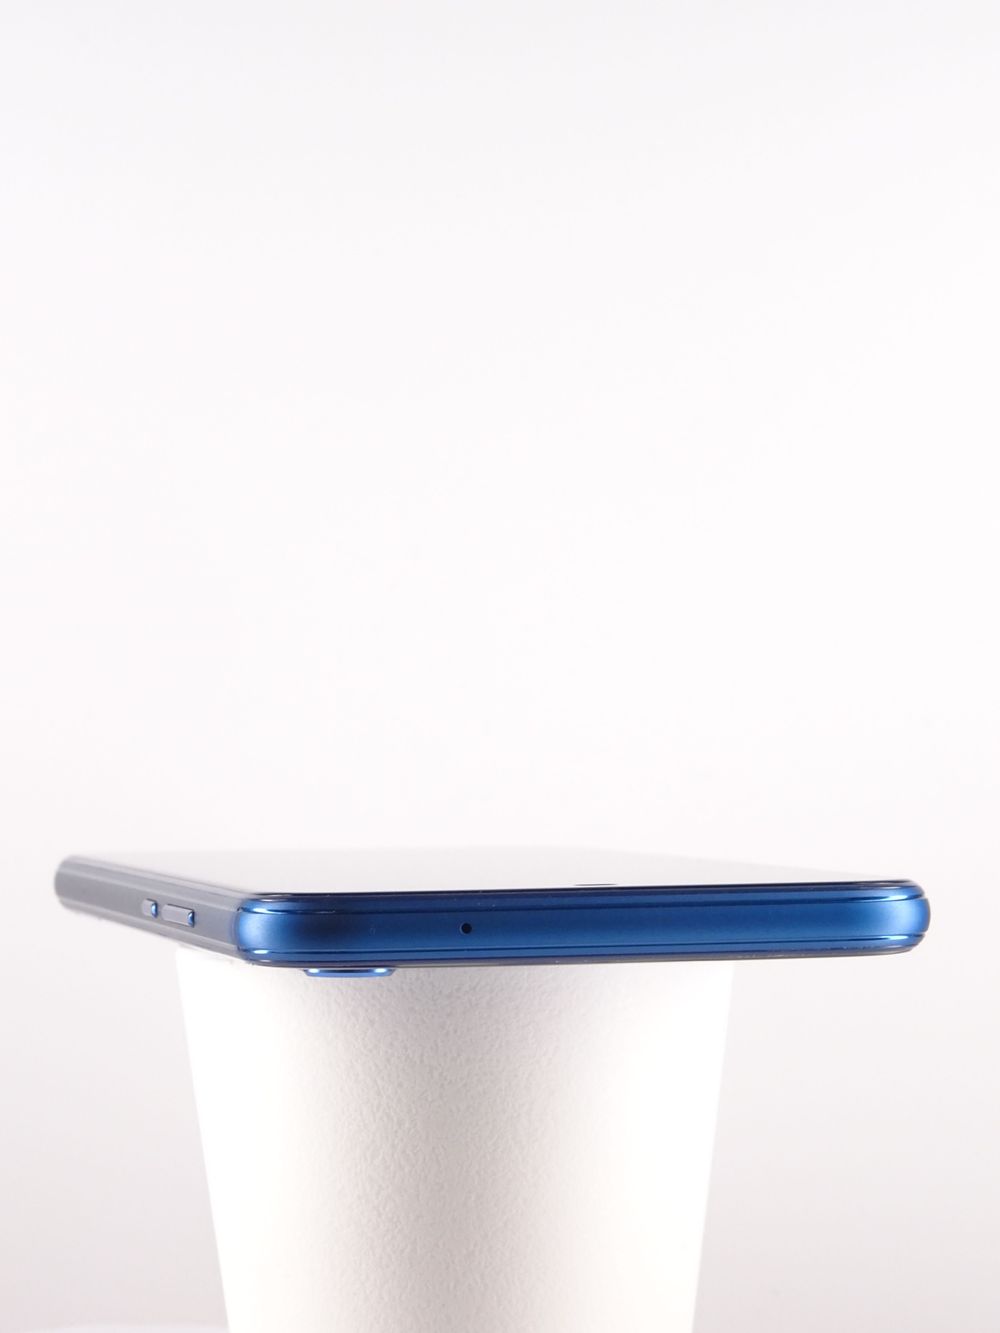 Telefon mobil Huawei P20 Lite, Klein Blue, 64 GB,  Ca Nou